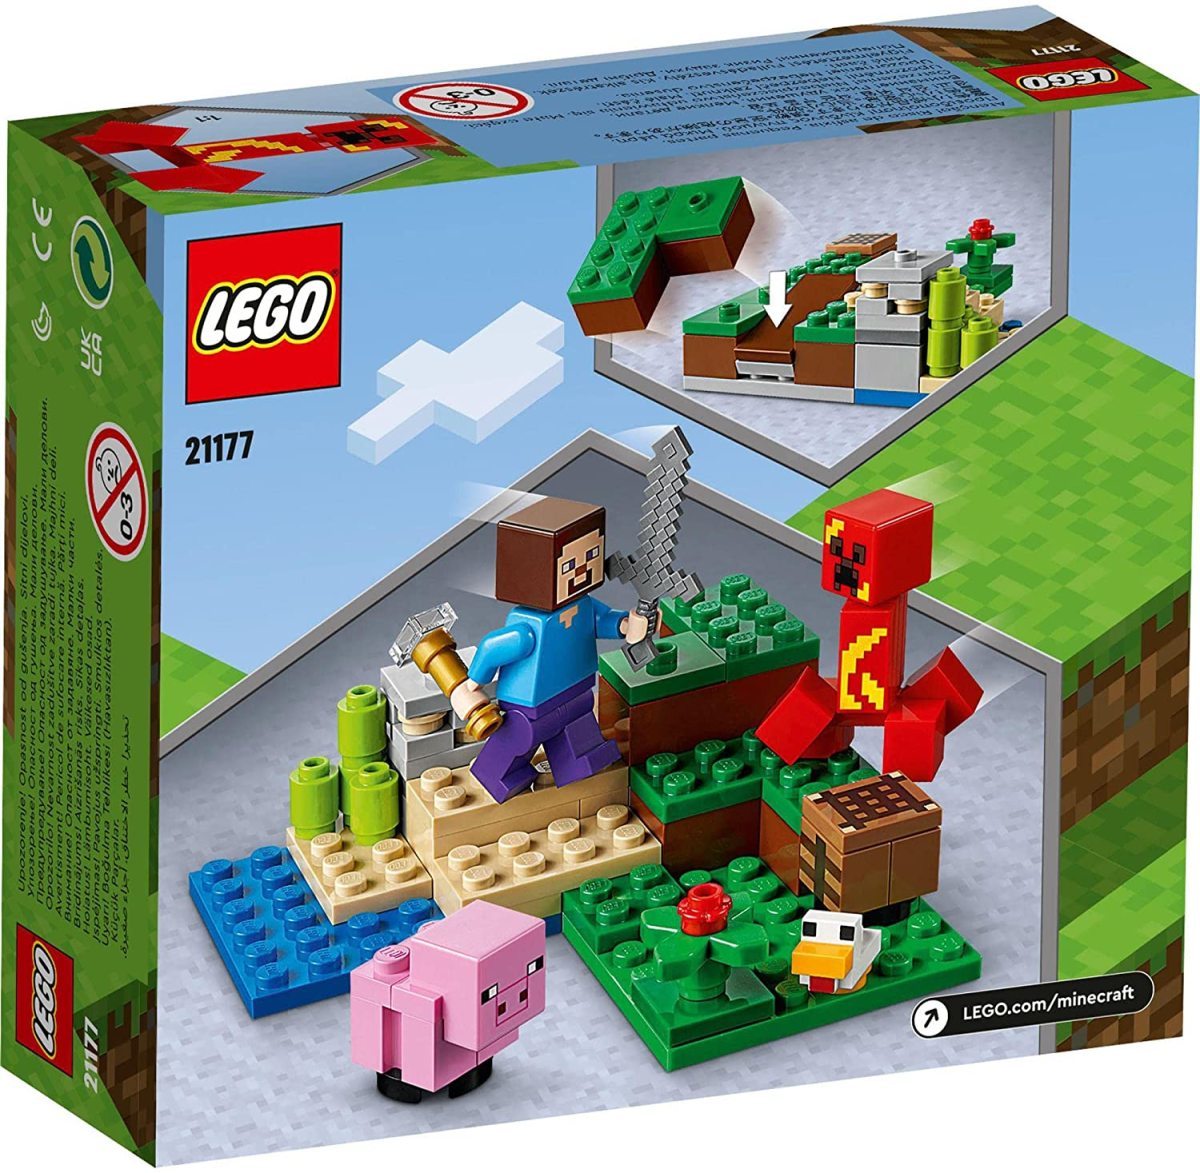 レゴ LEGO マインクラフト クリーパーとの対決 21177 知育玩具 おもちゃ ブロック 新品 未開封_画像1